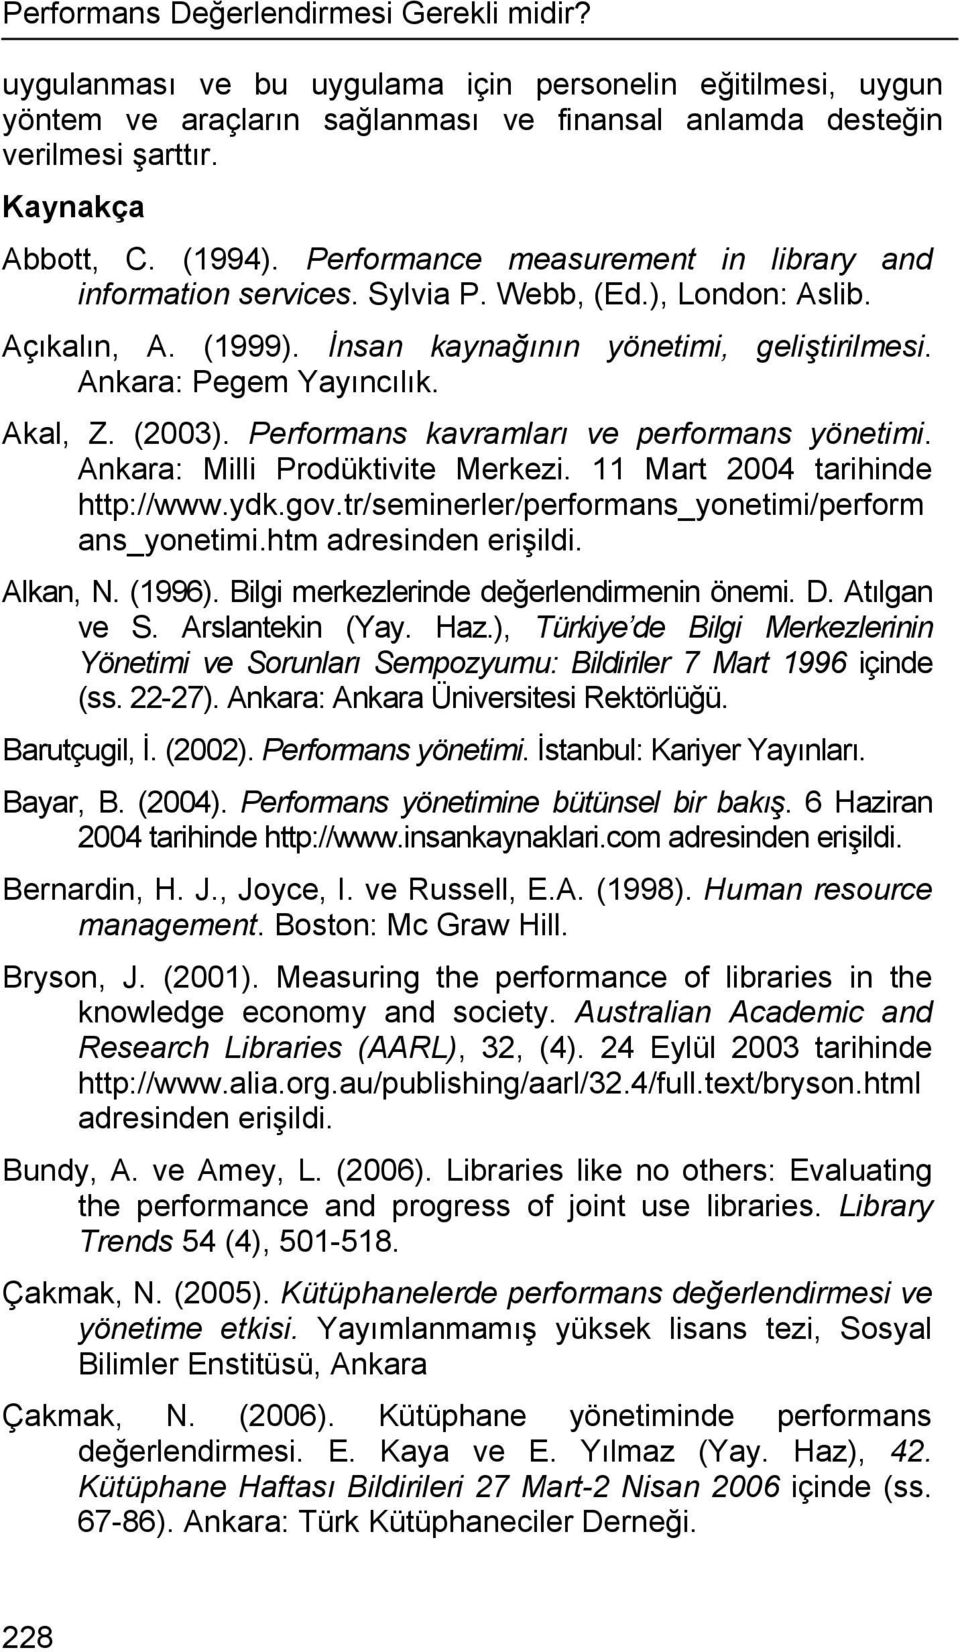 Ankara: Pegem Yayıncılık. Akal, Z. (2003). Performans kavramları ve performans yönetimi. Ankara: Milli Prodüktivite Merkezi. 11 Mart 2004 tarihinde http://www.ydk.gov.